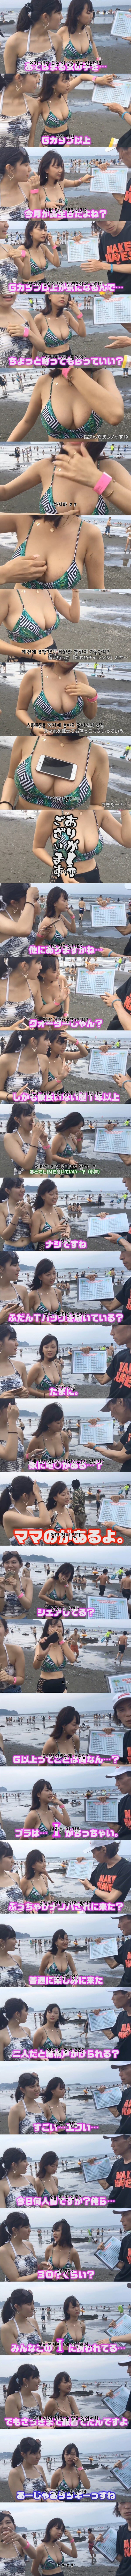 일본 수영복녀 인터뷰